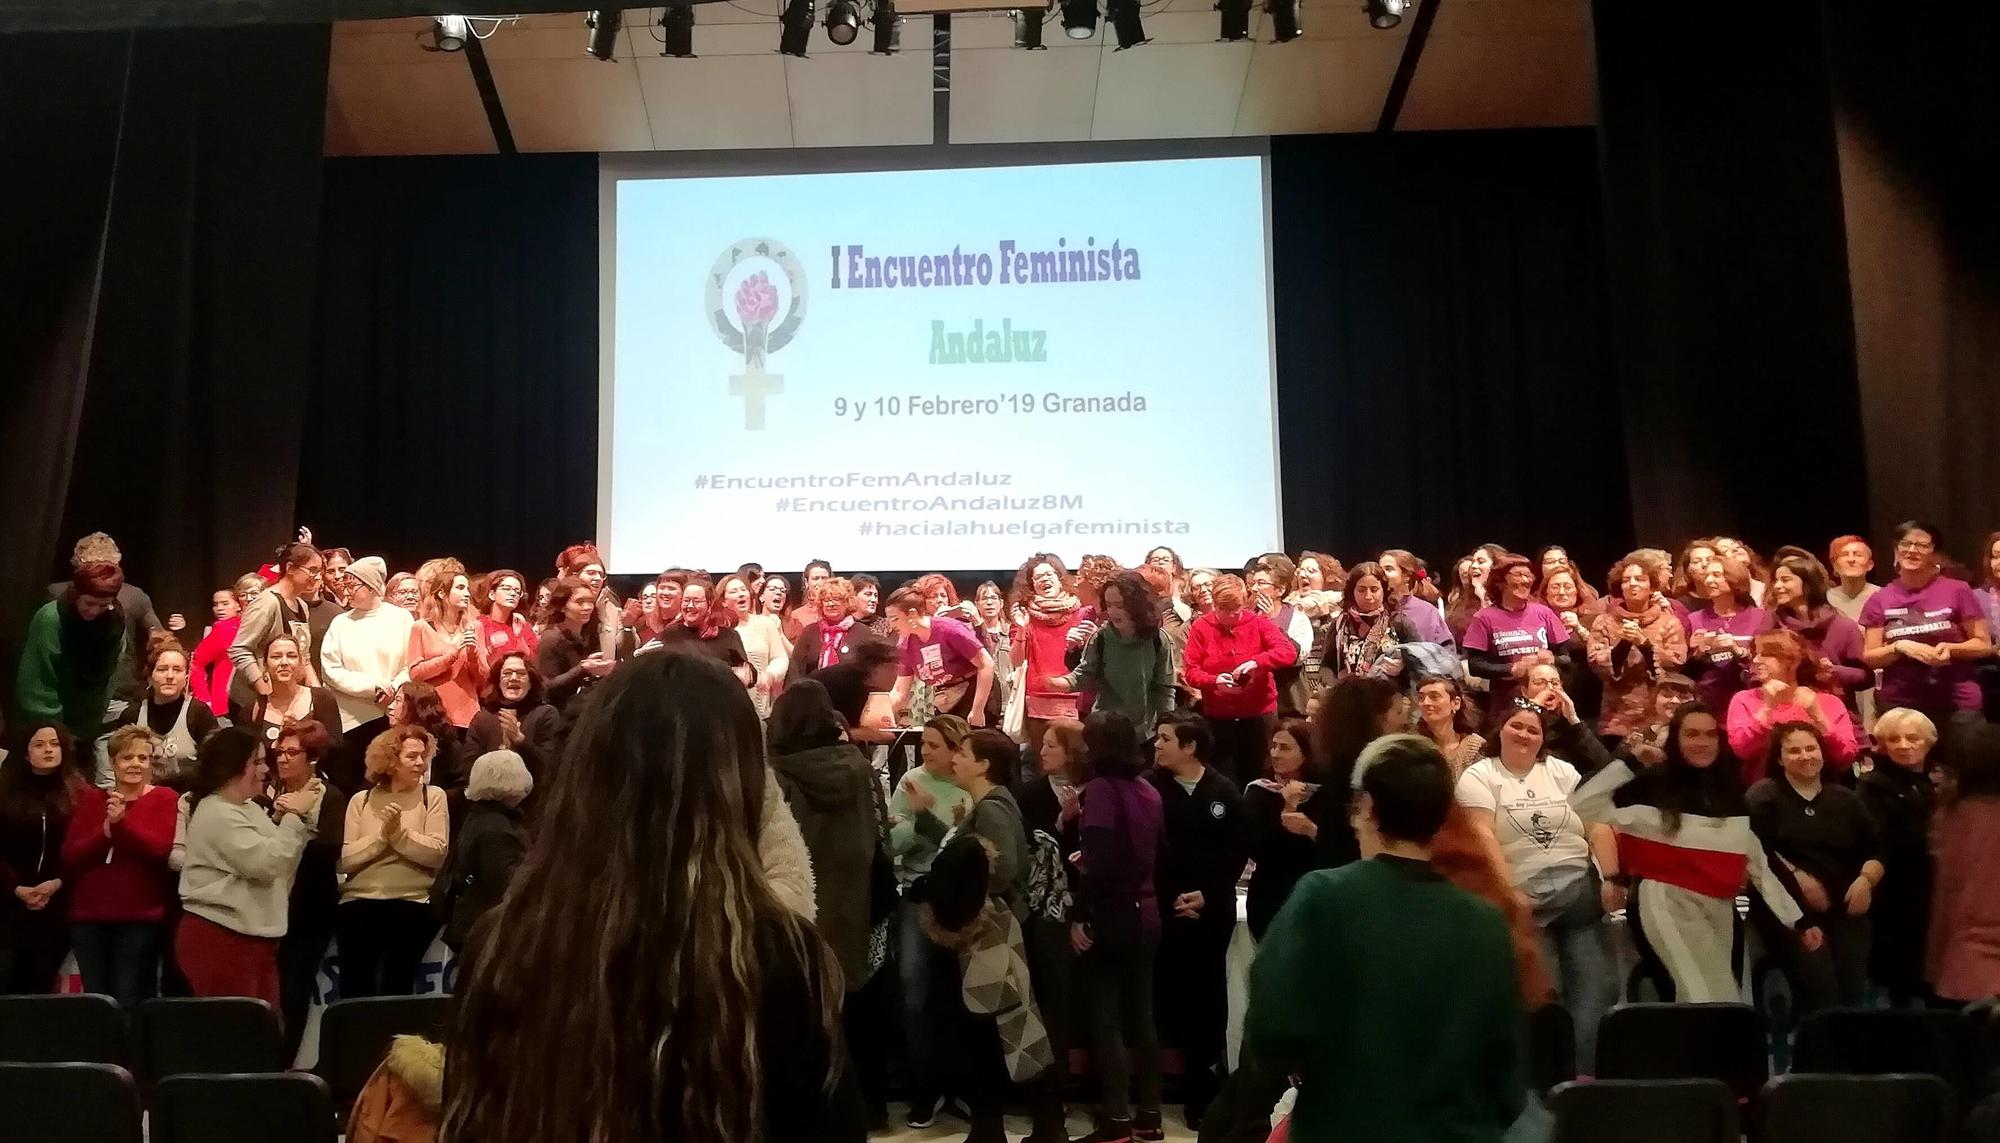 I Encuentro Feminista Andaluz